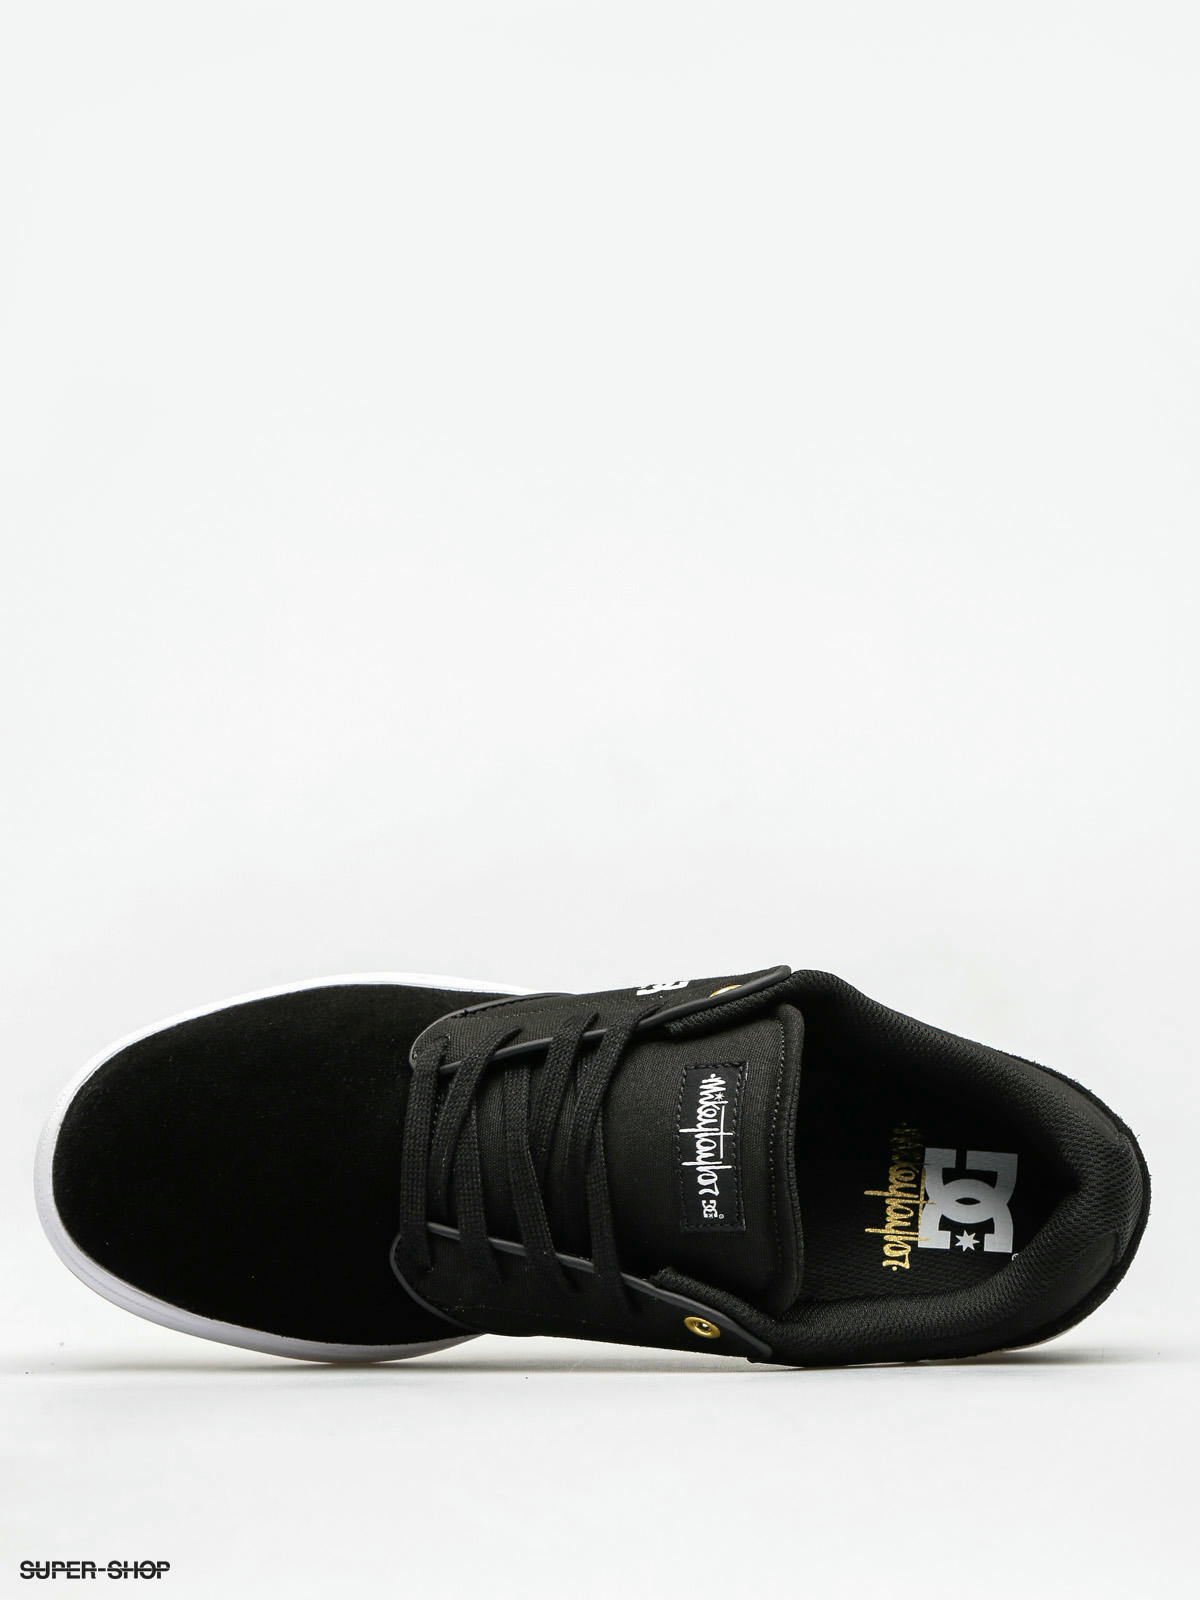 DC Shoes Mikey Taylor (black/white/gum)